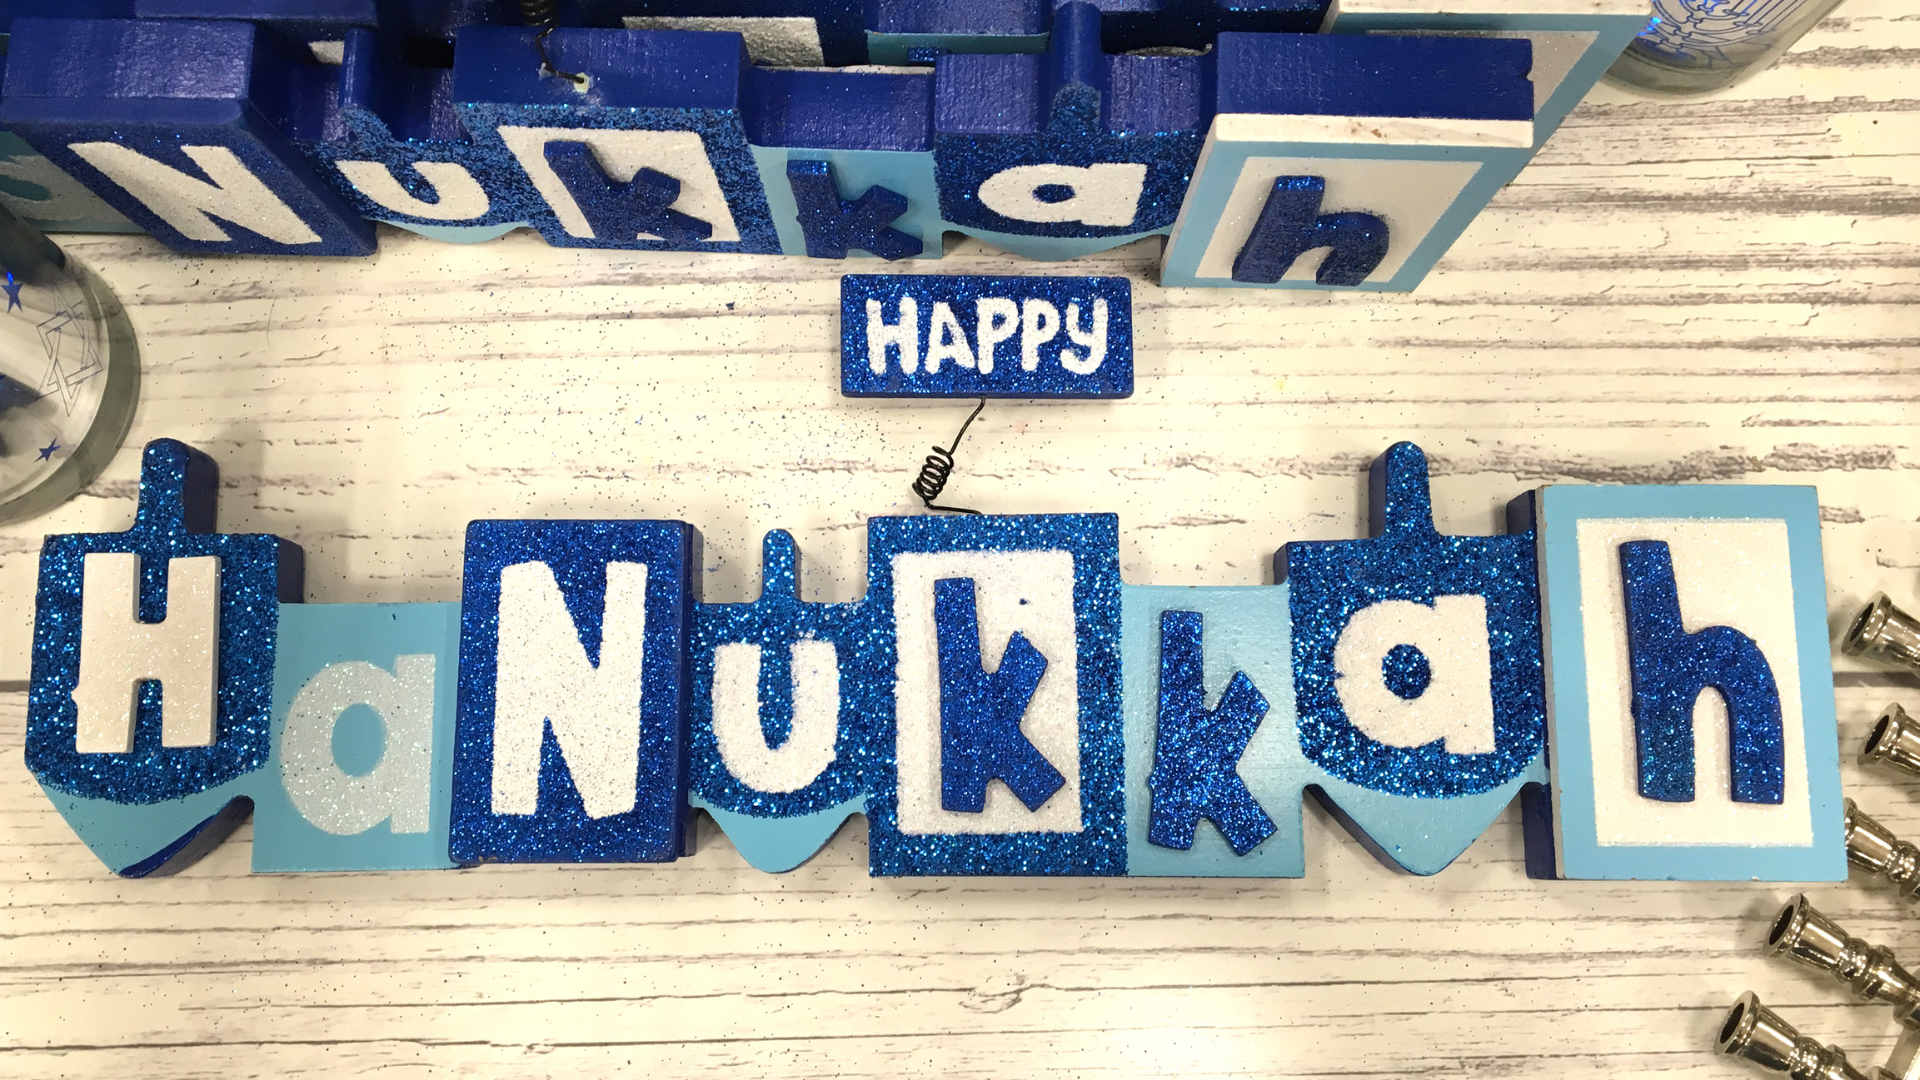 Blocks in shades of blue that spell "Hanukkah"